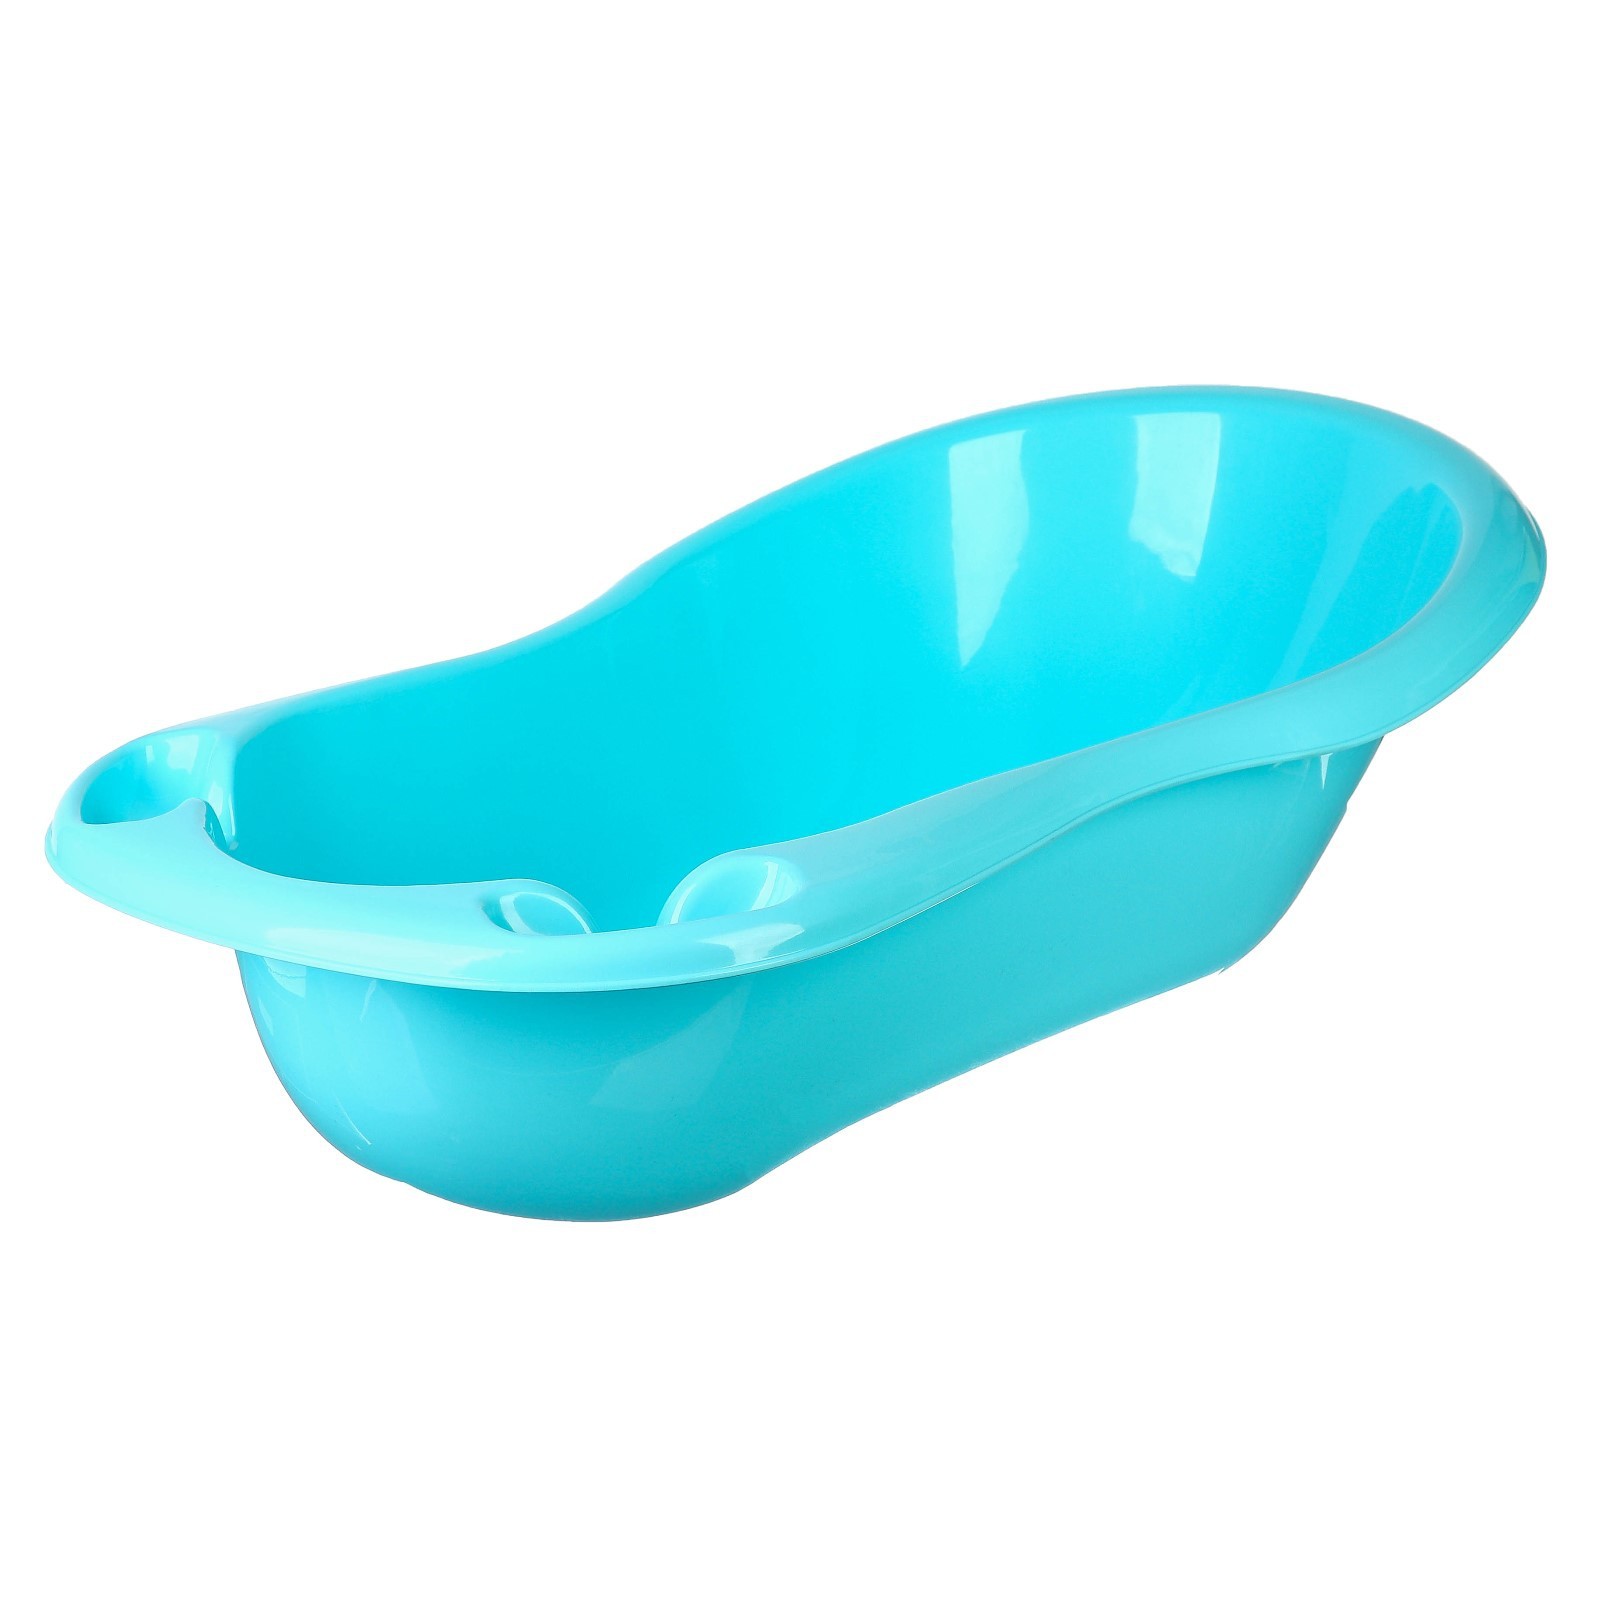 elf-plast Ванна детская 96 см., цвет голубой/бирюзовый